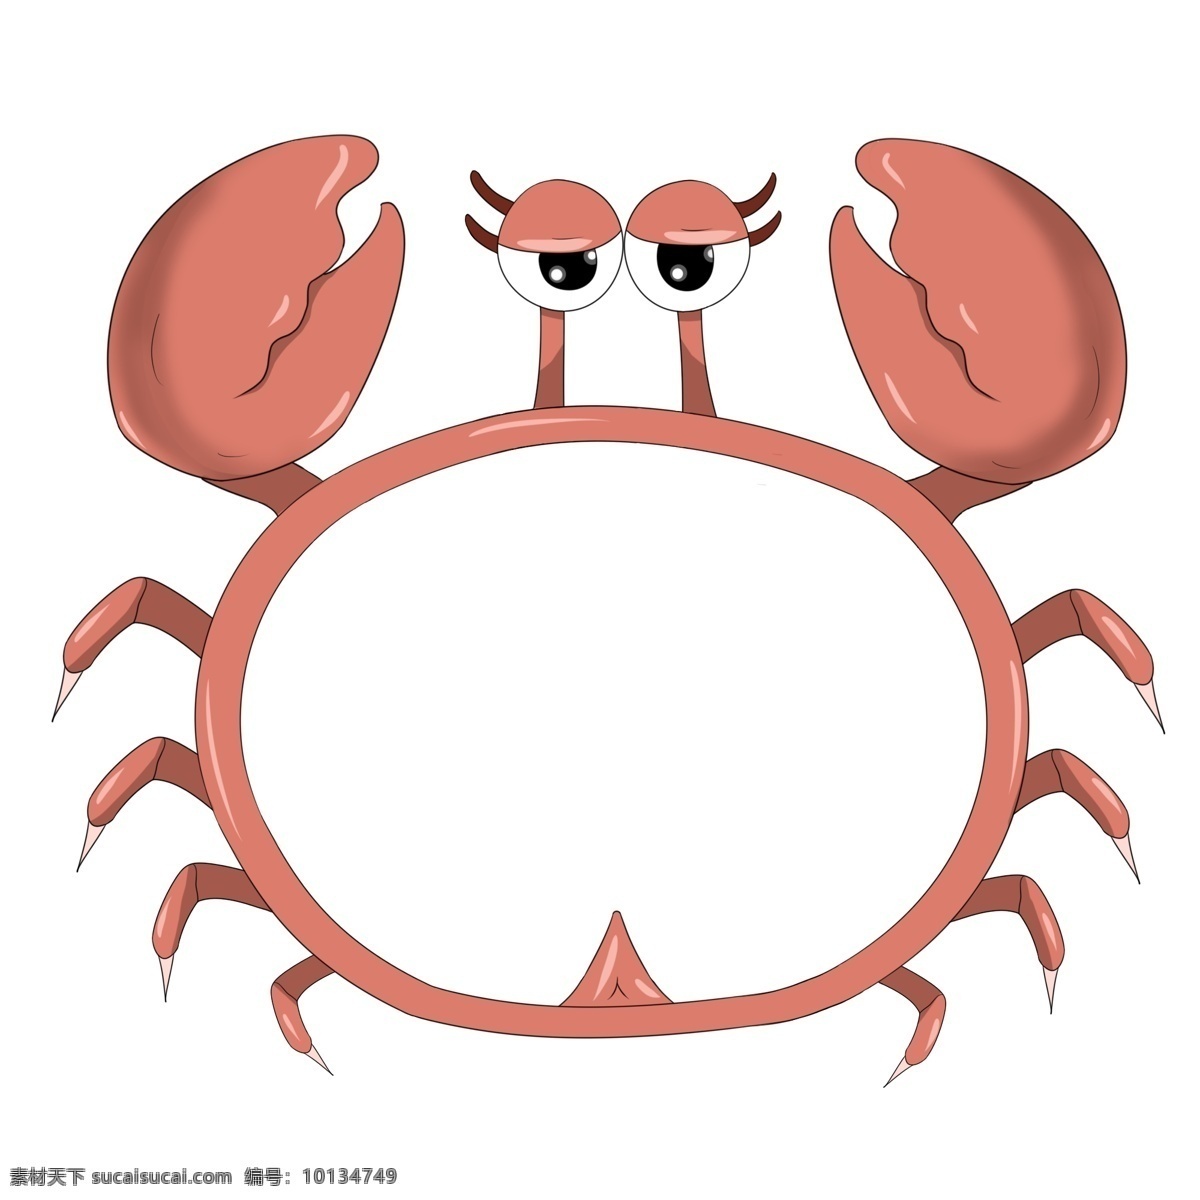 可爱 小 螃蟹 边框 插画 可爱的螃蟹 框架 框子 框框 边框插画 卡通插画 简易边框 螃蟹的边框